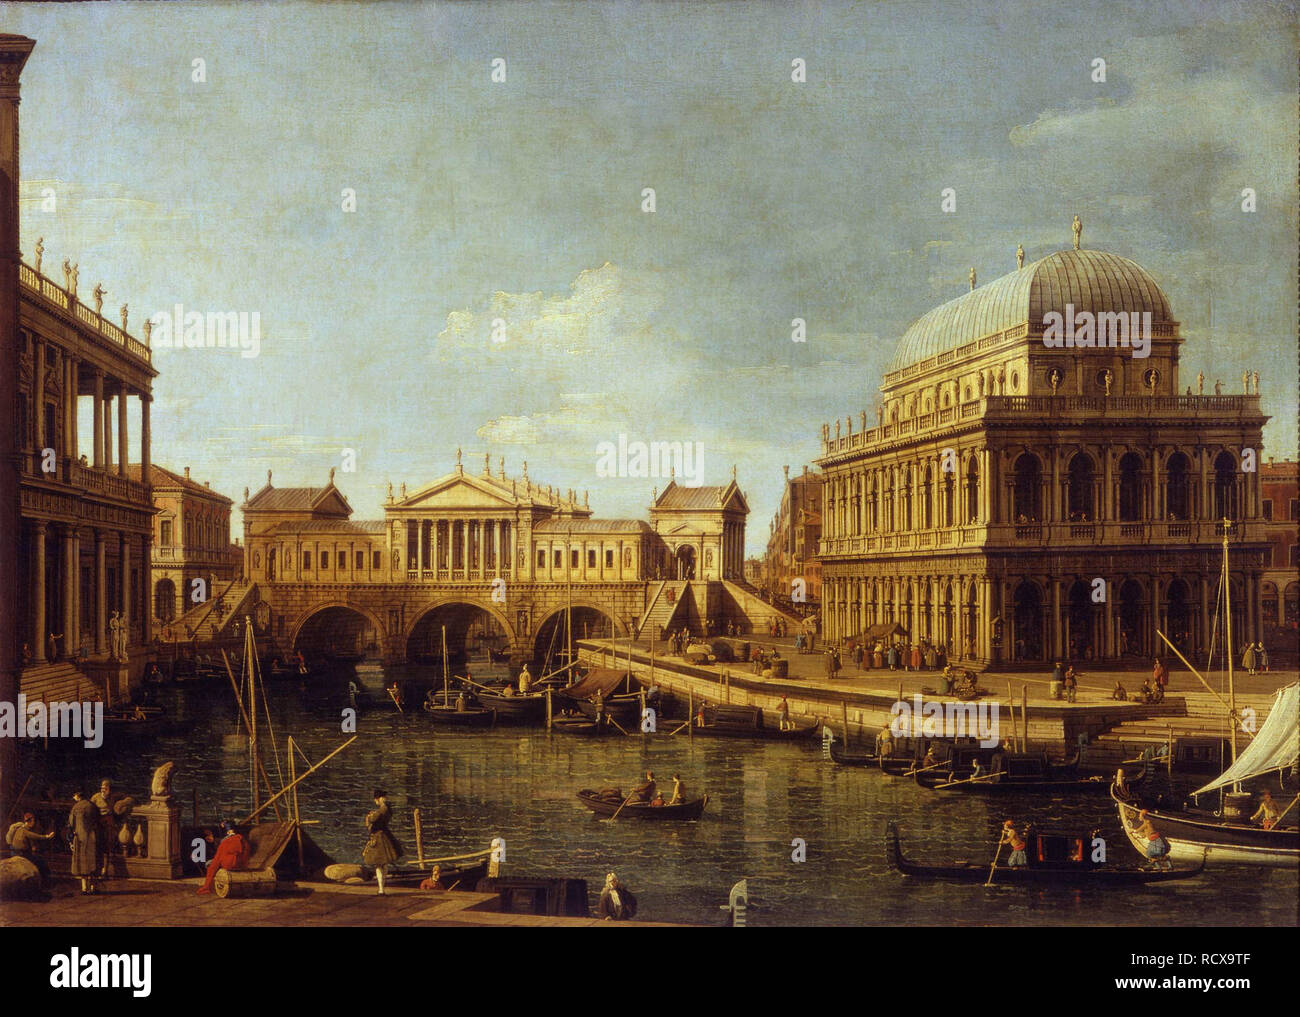 Capriccio con la arquitectura palladiana. Museo: Galleria Nazionale de Parma. Autor: Canaletto. Foto de stock